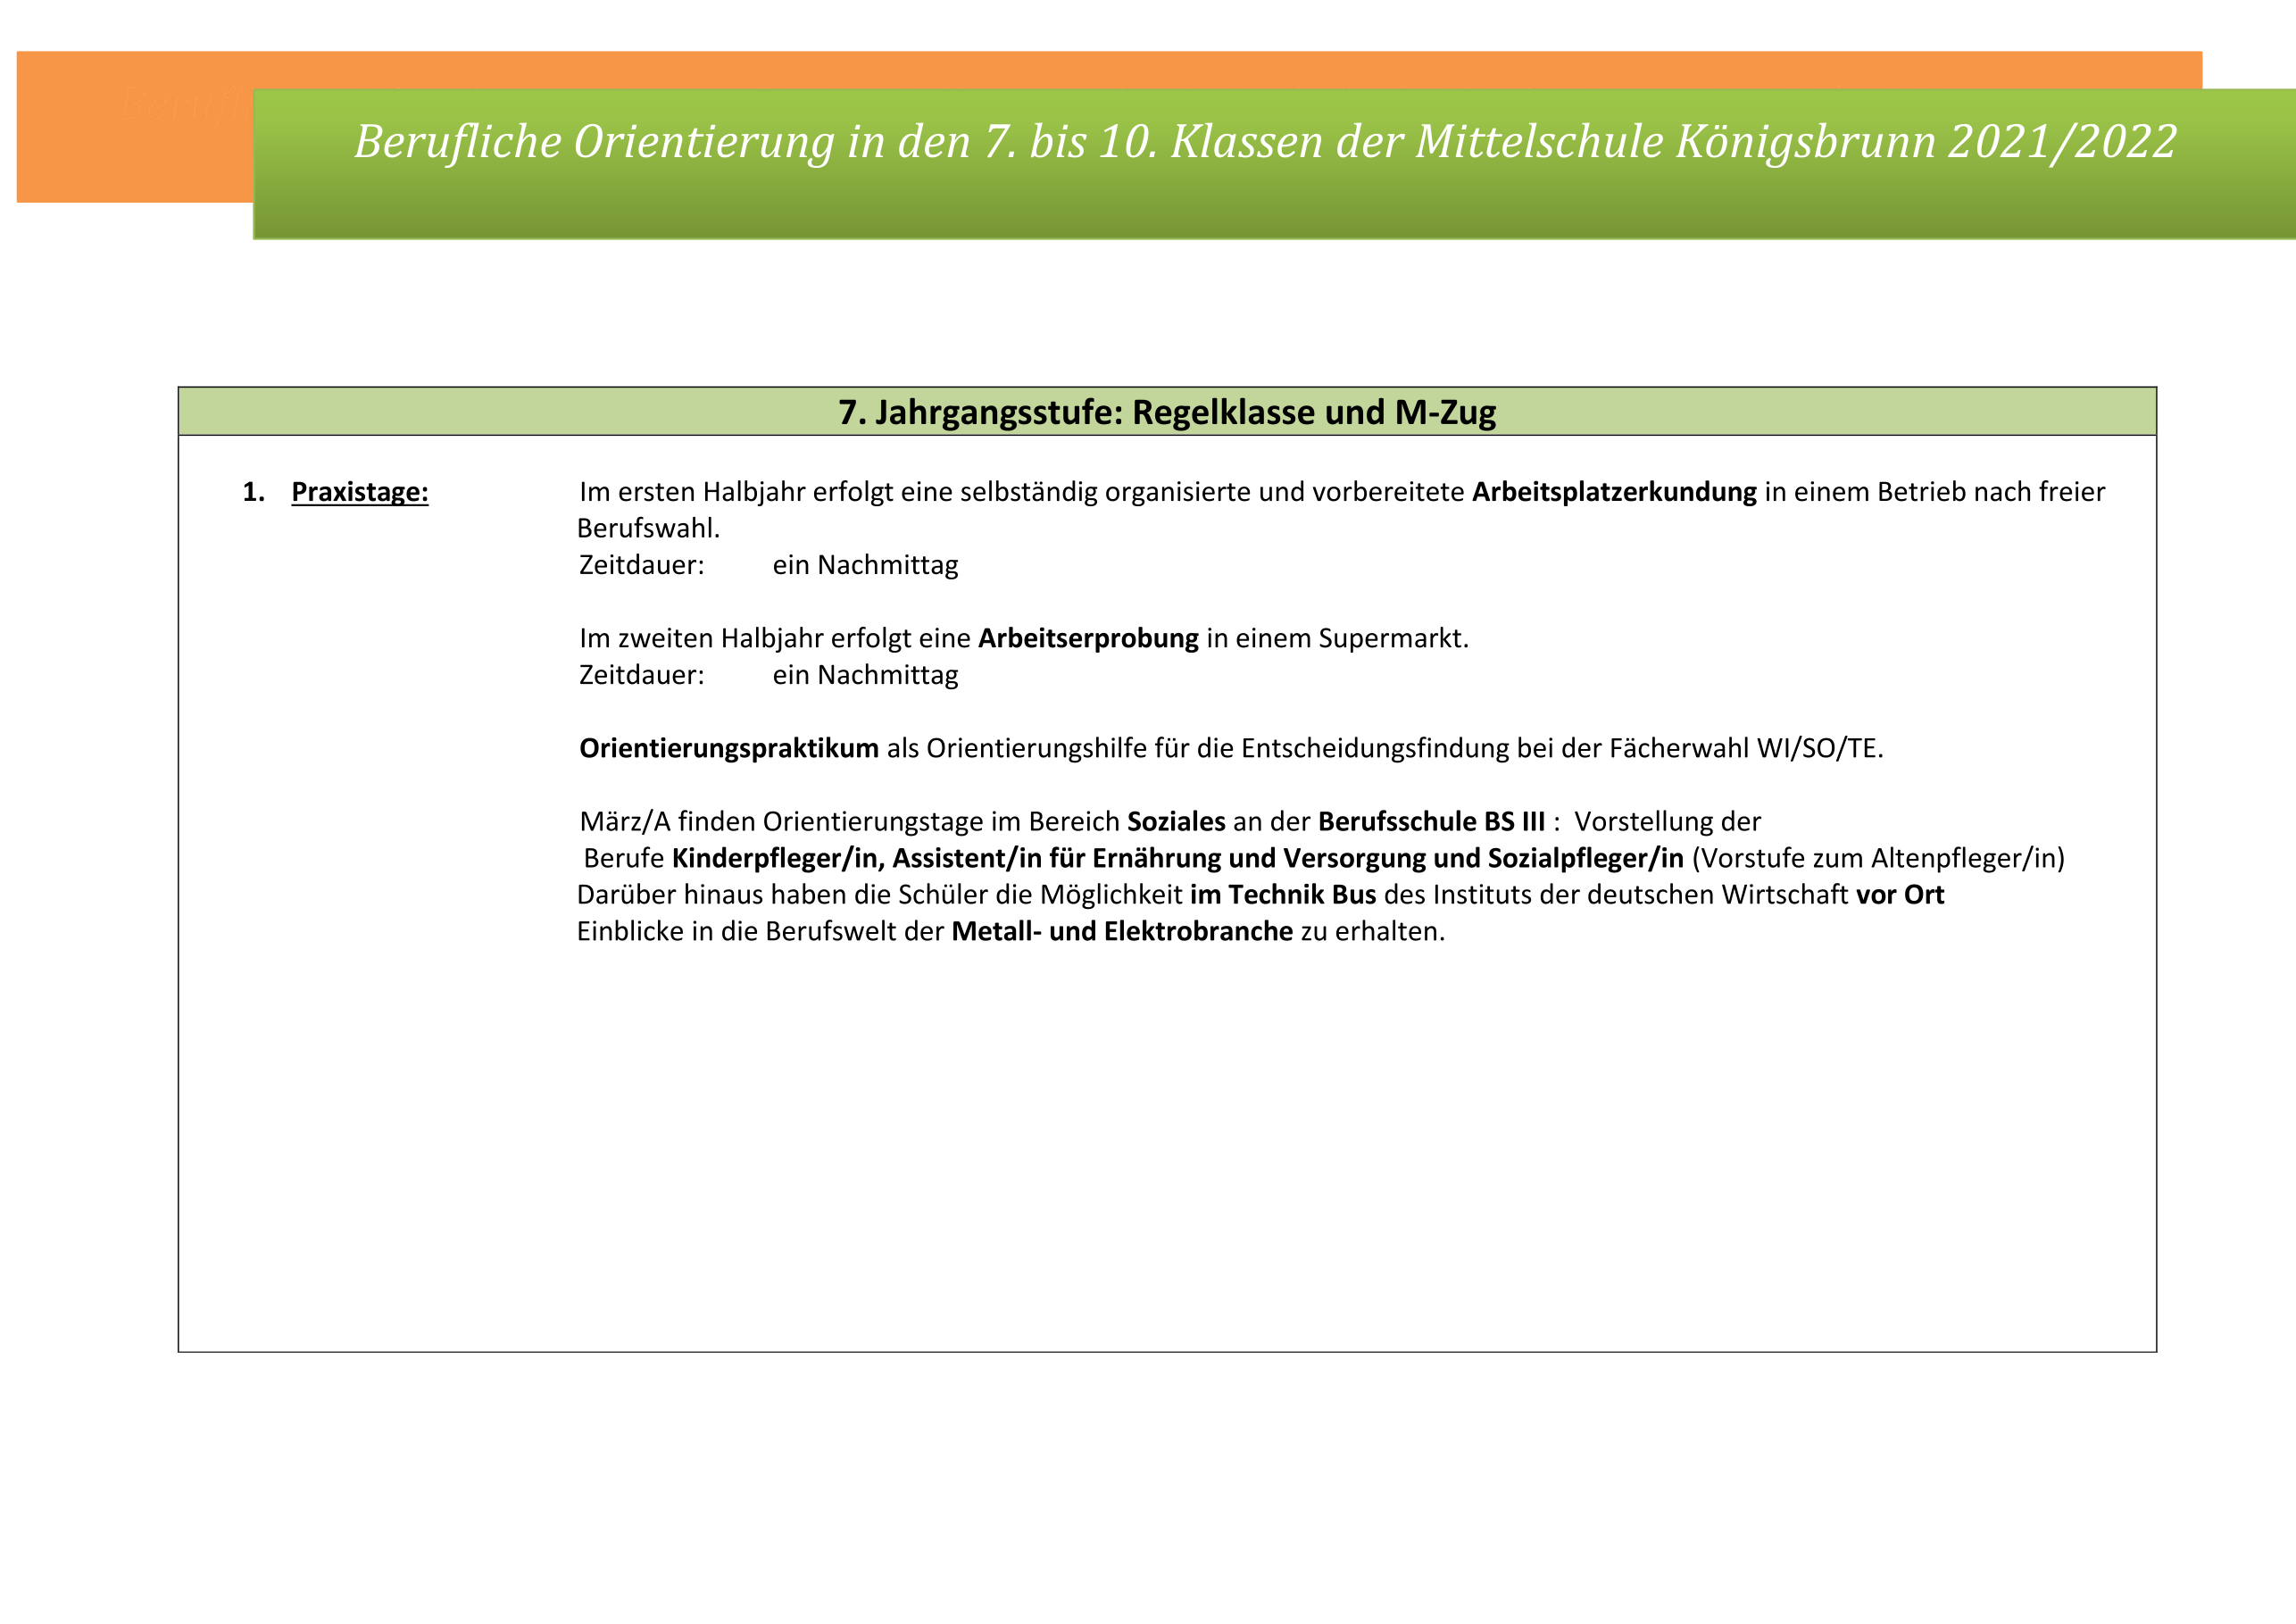 Berufliche-Orientierung-MS-KOe-2021-2022-Ueberblick-1